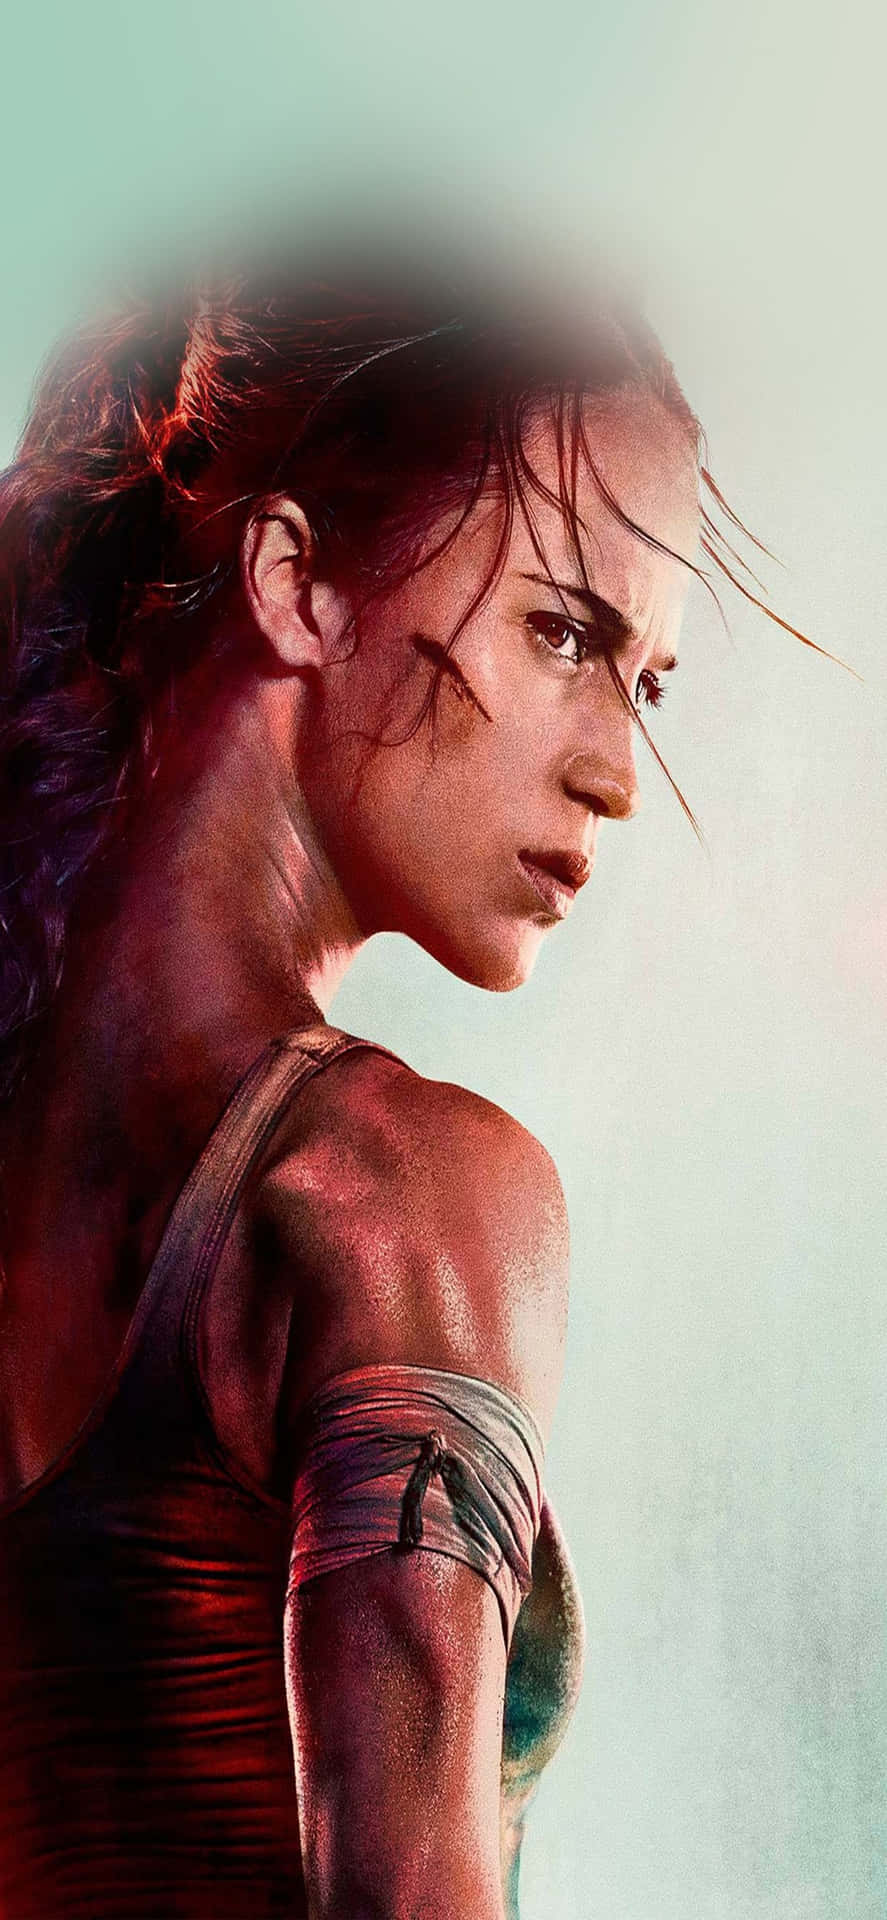 Bereddig För Rise Of The Tomb Raider På Iphone Xs Max.